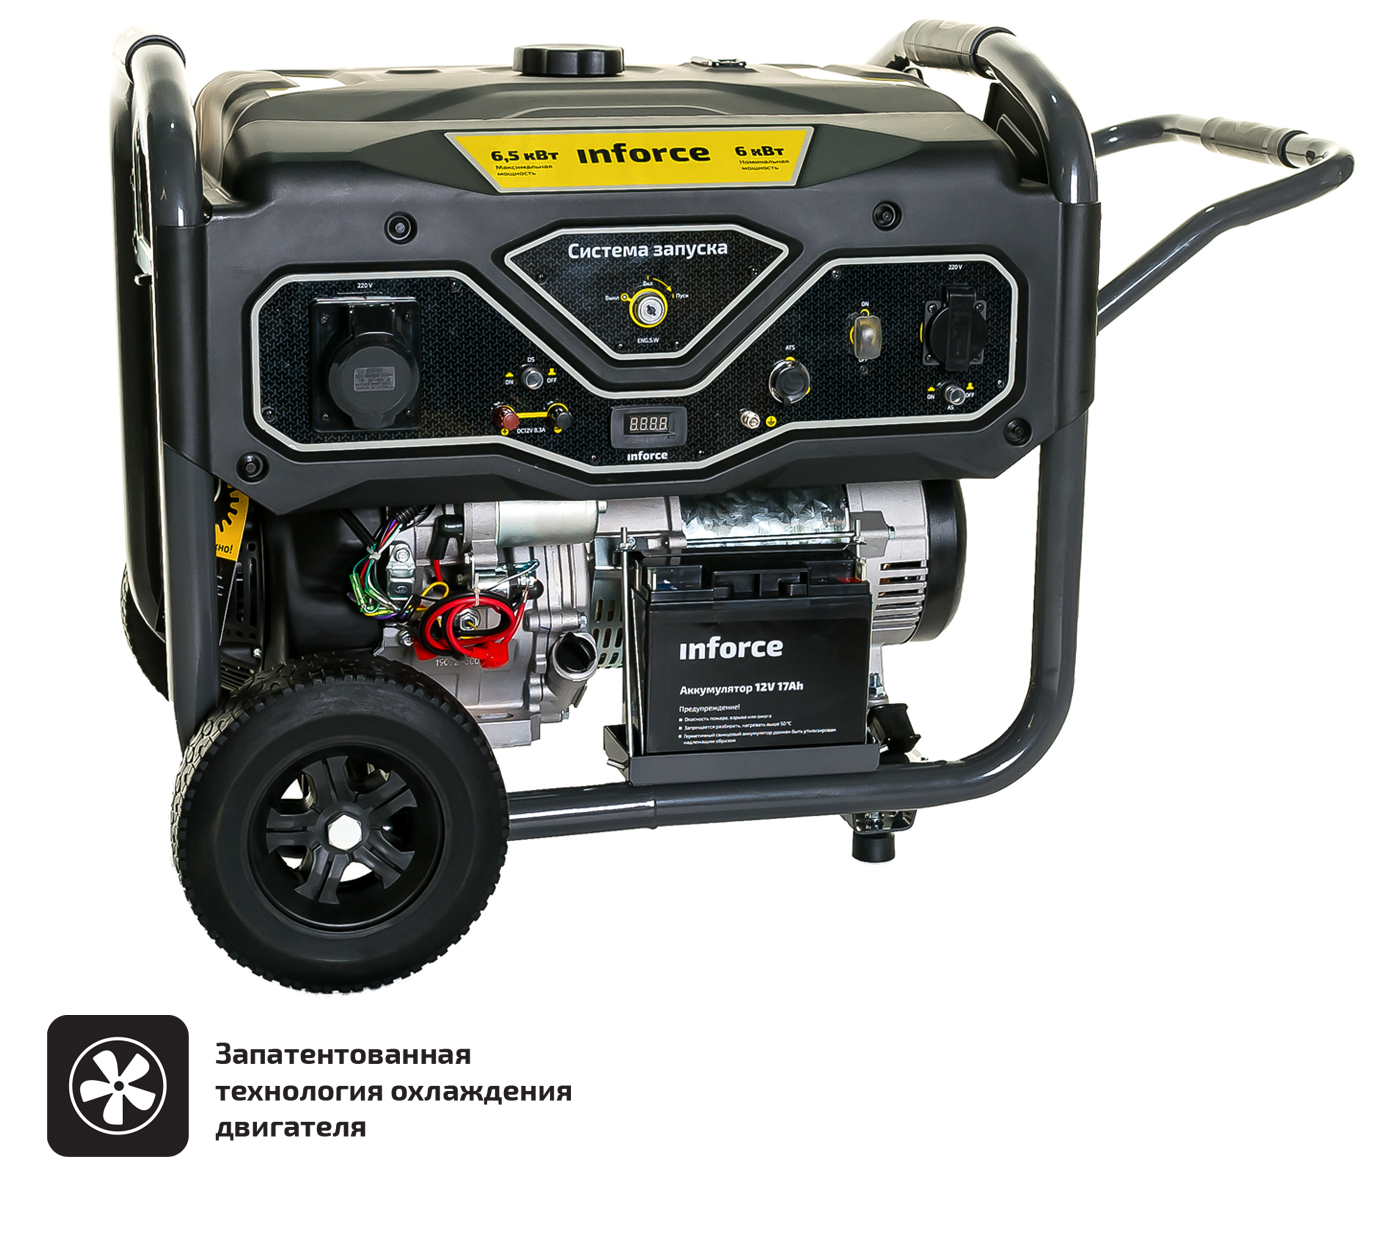 Бензиновый генератор с возможностью подключения блока автоматики Inforce GL 6500 04-03-15 бензиновый генератор inforce